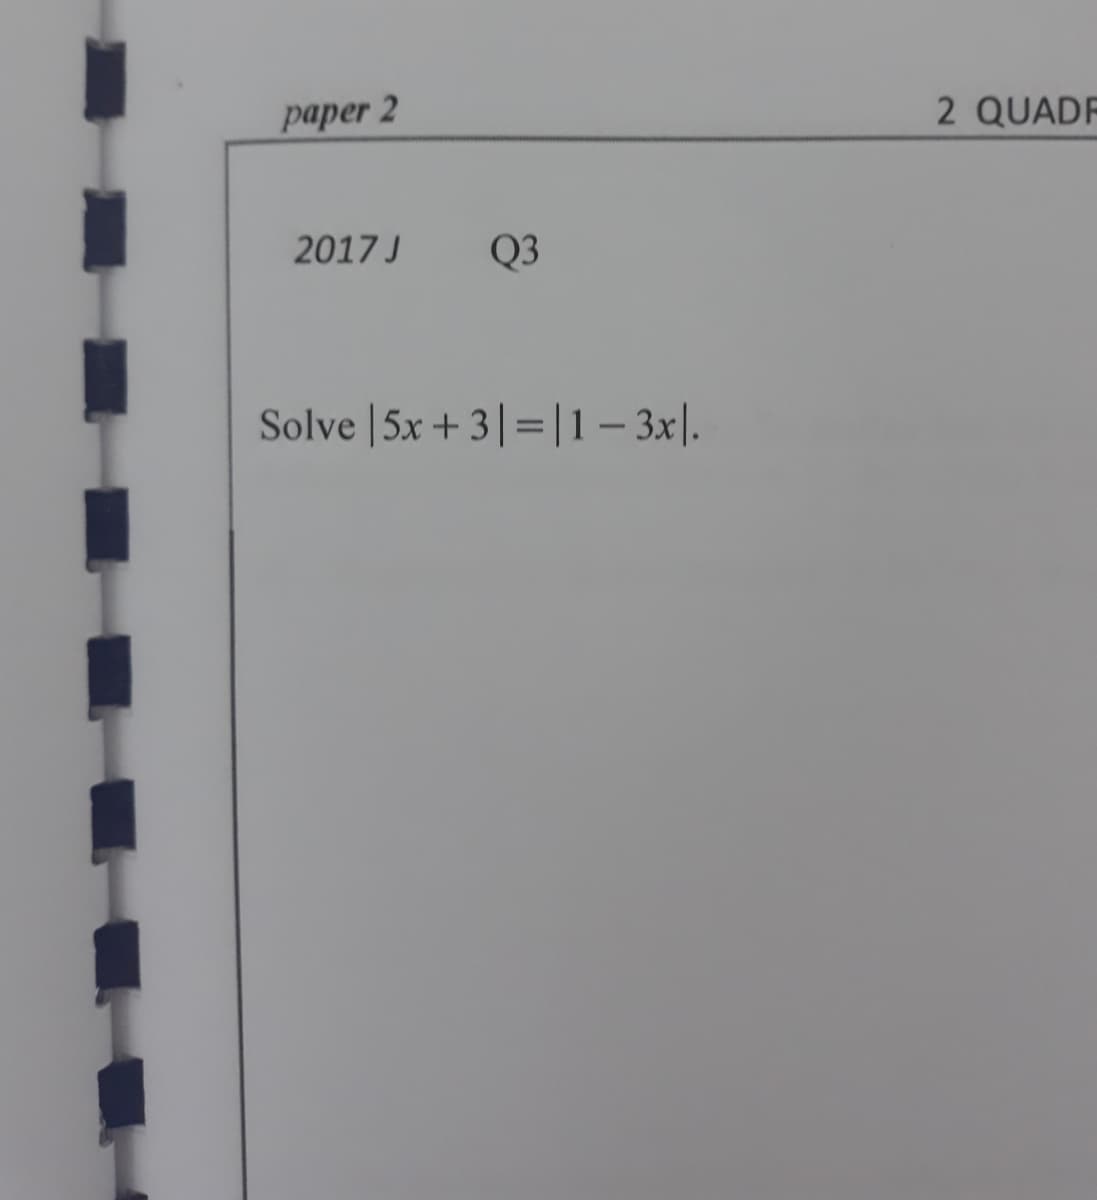 раper 2
2 QUADF
2017 J
Q3
Solve |5x +3|= |1– 3x|.
